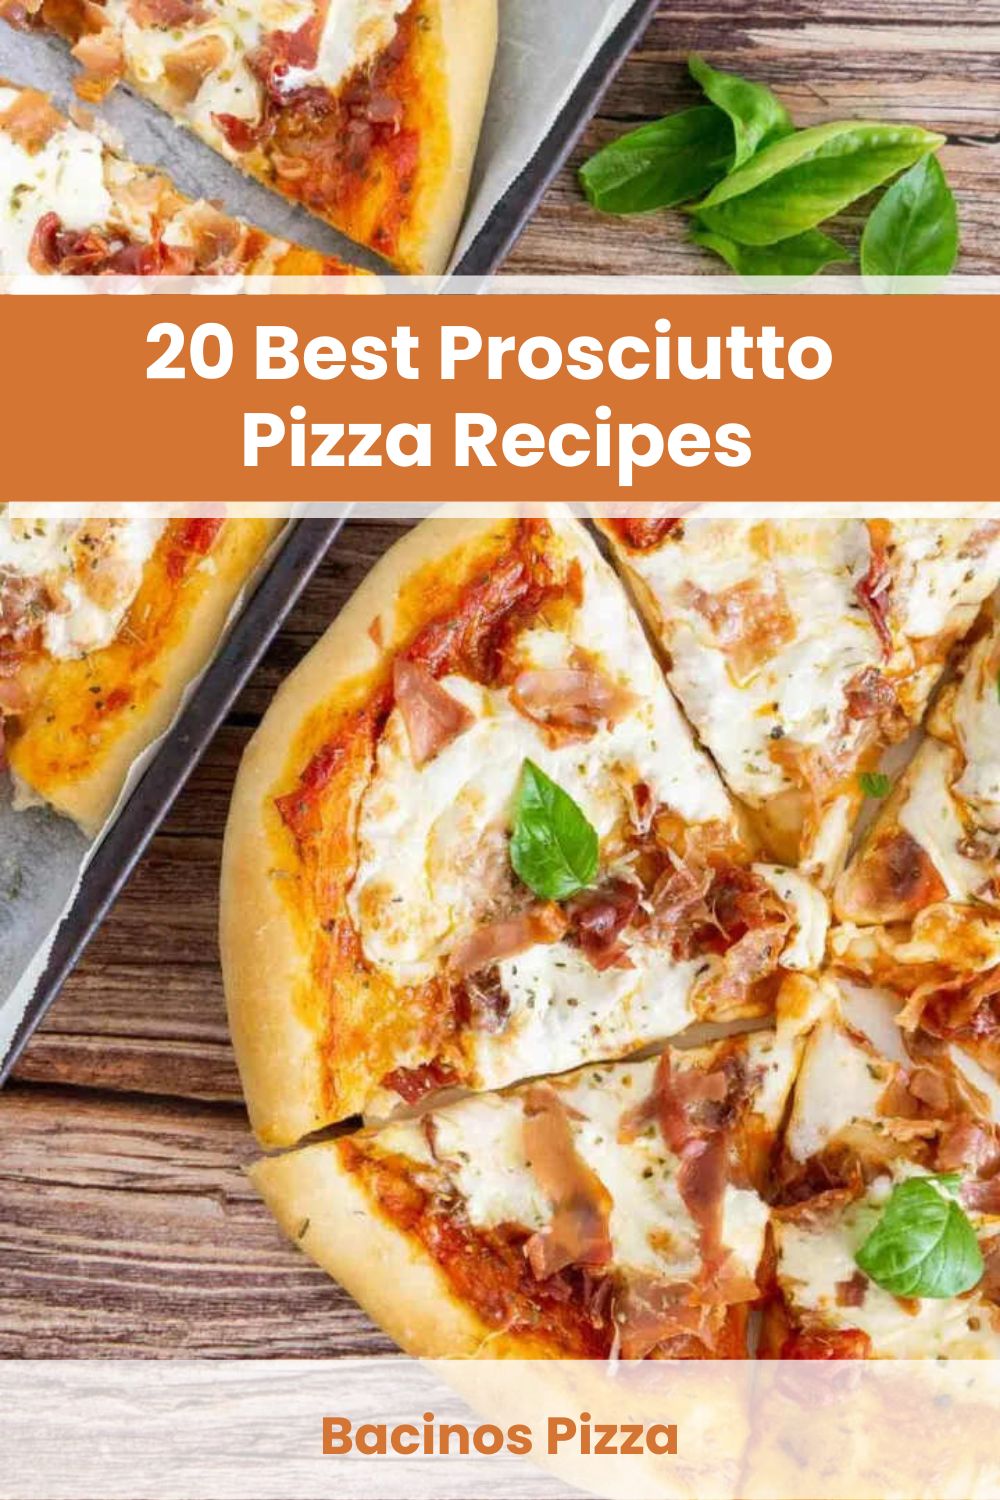 Best Prosciutto Pizza Recipes